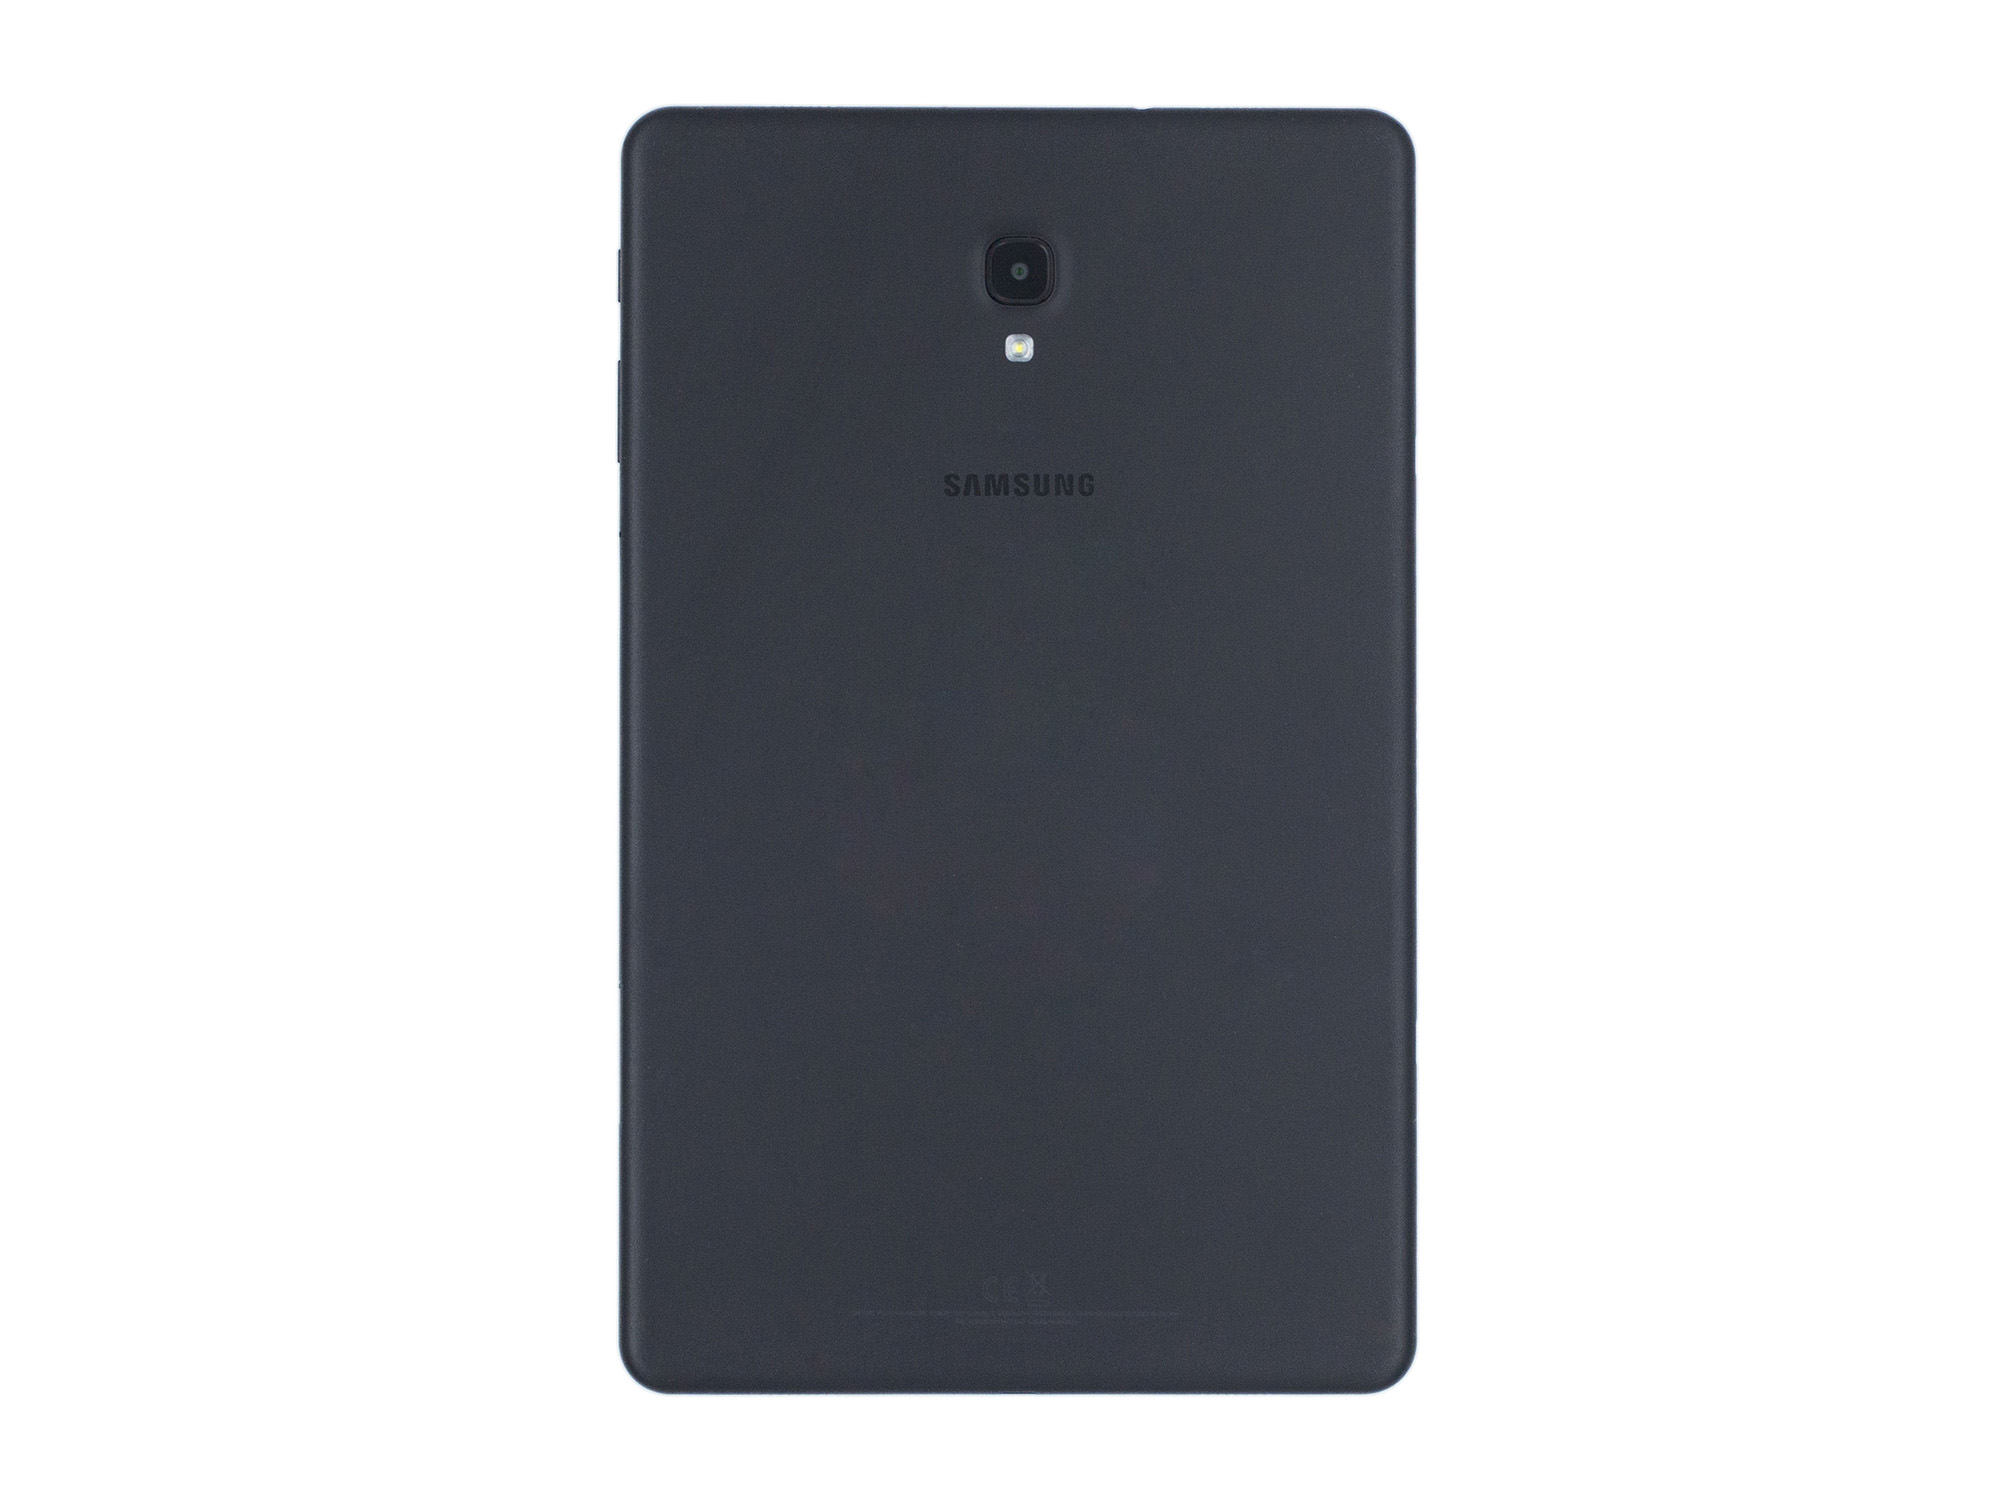 Samsung Galaxy Tab A 10.5 T595 (2018) 32GB 10,5" WIFI+Cellular black sehr gut